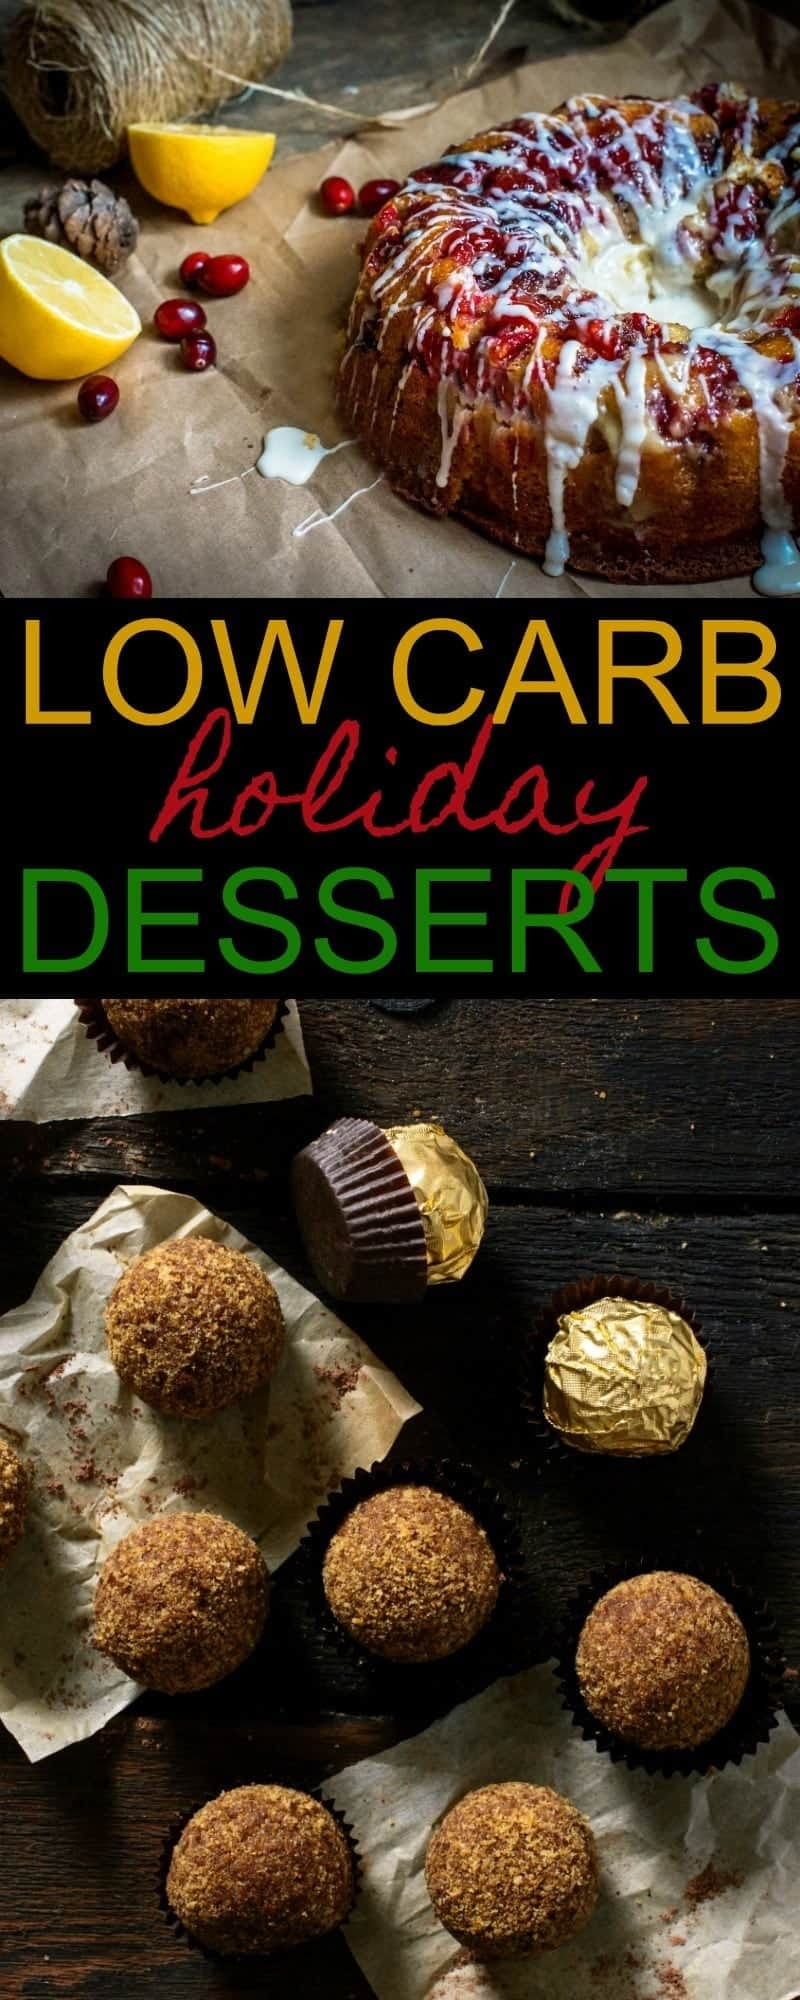 Low Carb Holiday Desserts
 Low Carb Holiday Desserts 15 Delicious Recipes 730